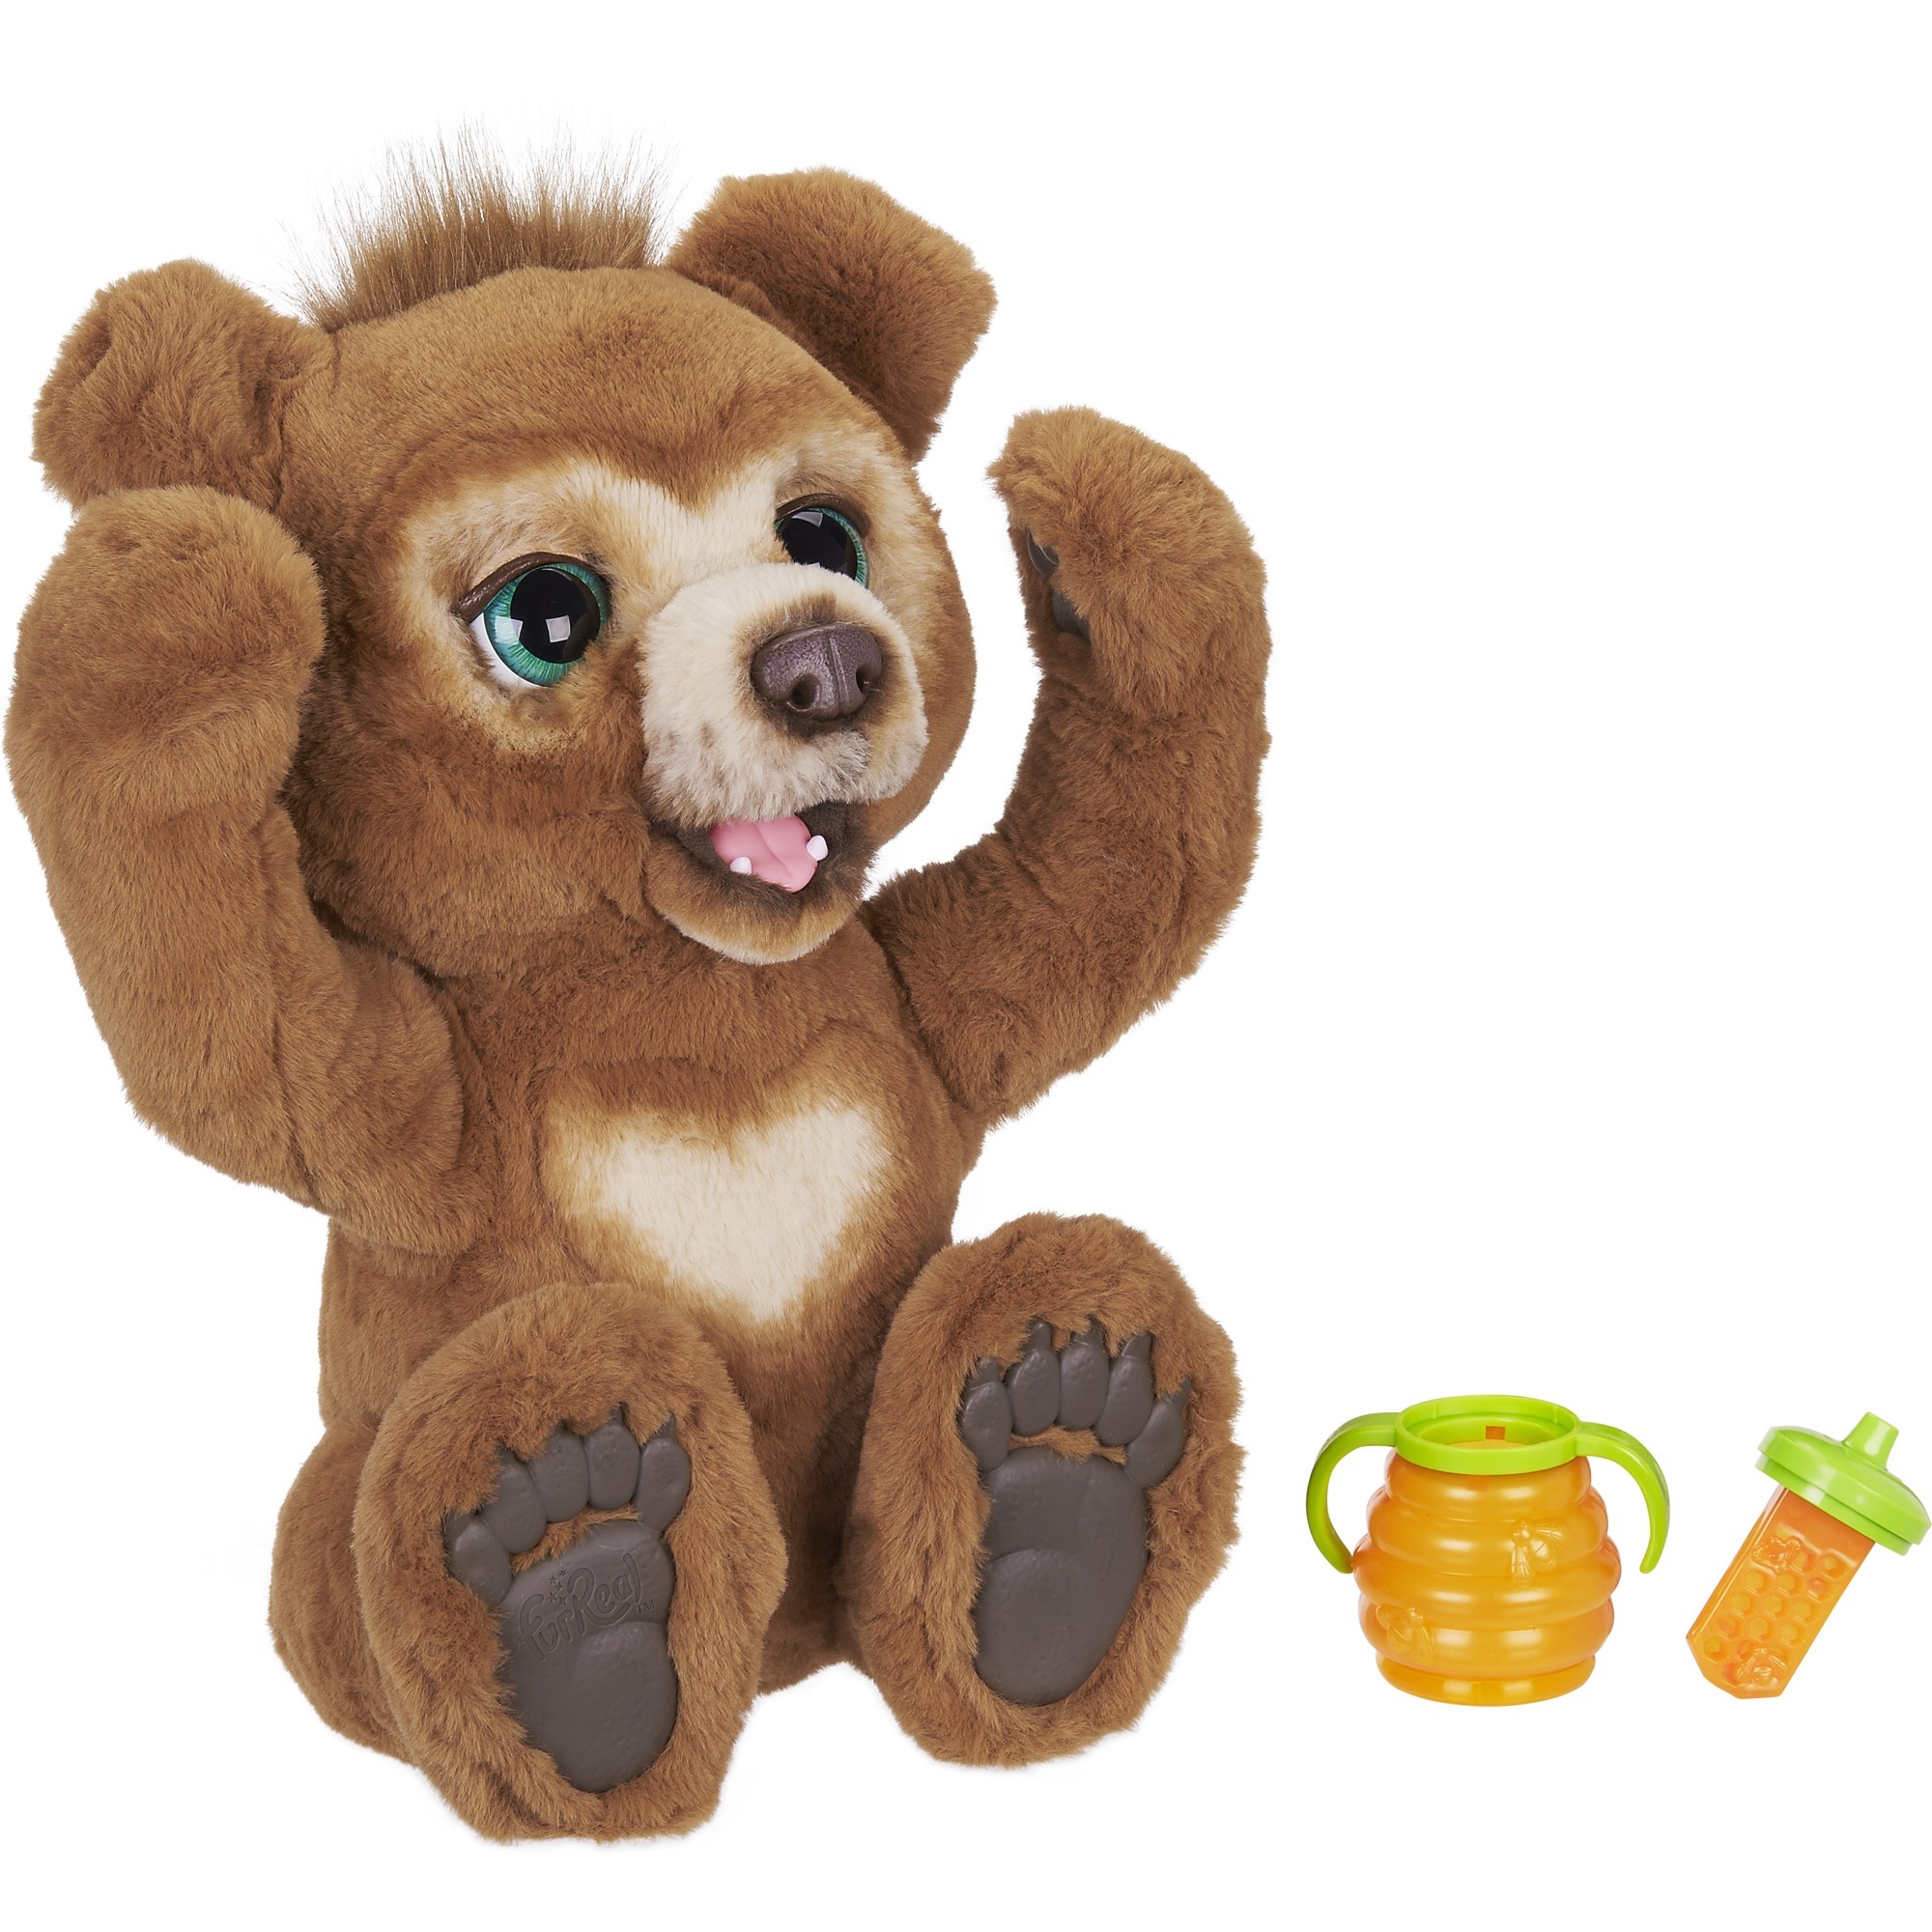 Spielzeug: Hasbro FurReal Cubby, mein Knuddelbär, Kuscheltier